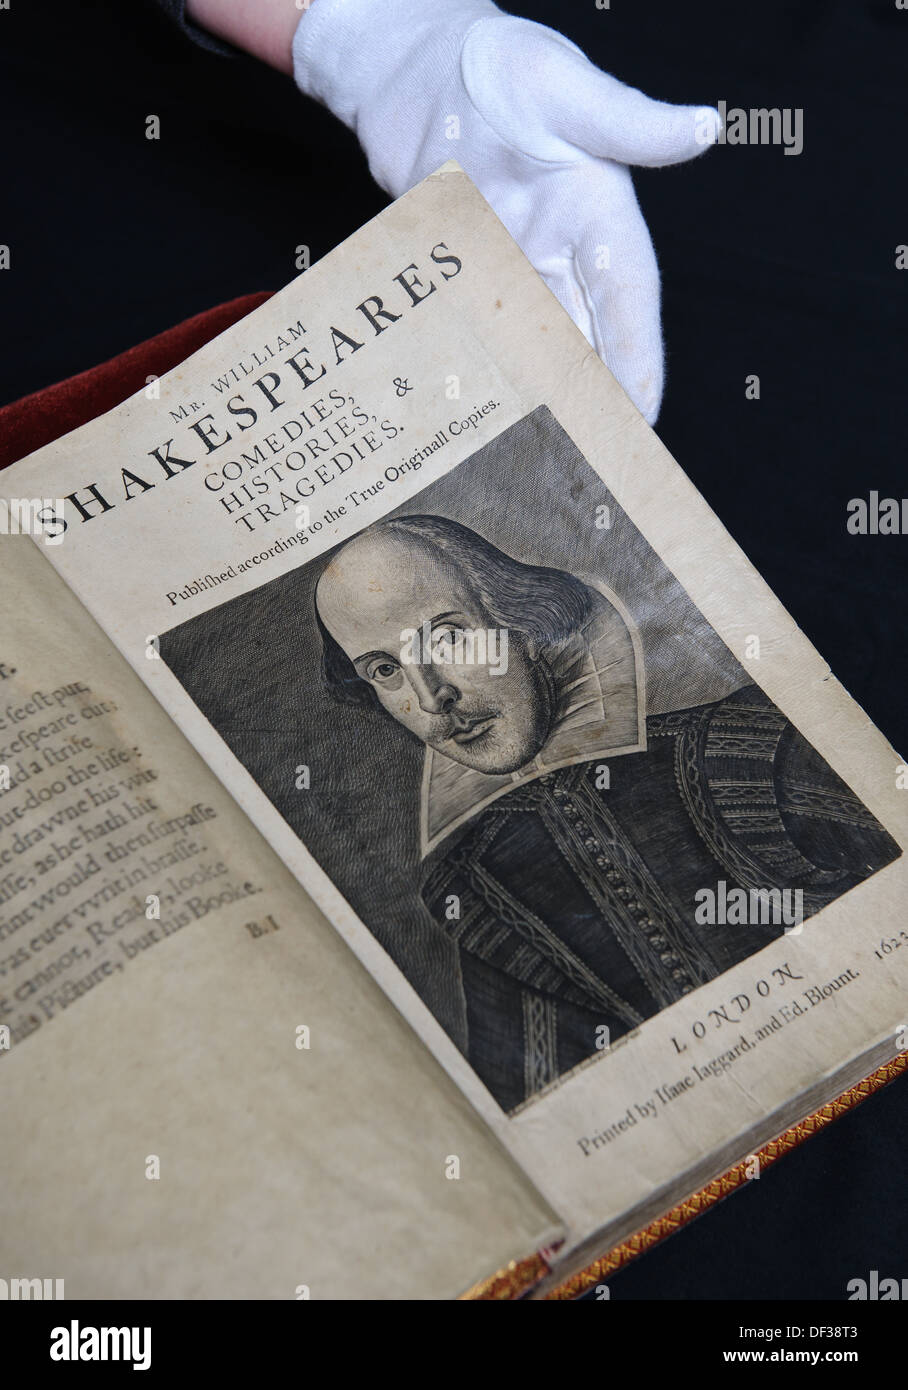 Un rare première édition folio de l'œuvre complète de William Shakespeare à partir de la Bibliothèque de Birmingham Shakespeare Collection. Banque D'Images